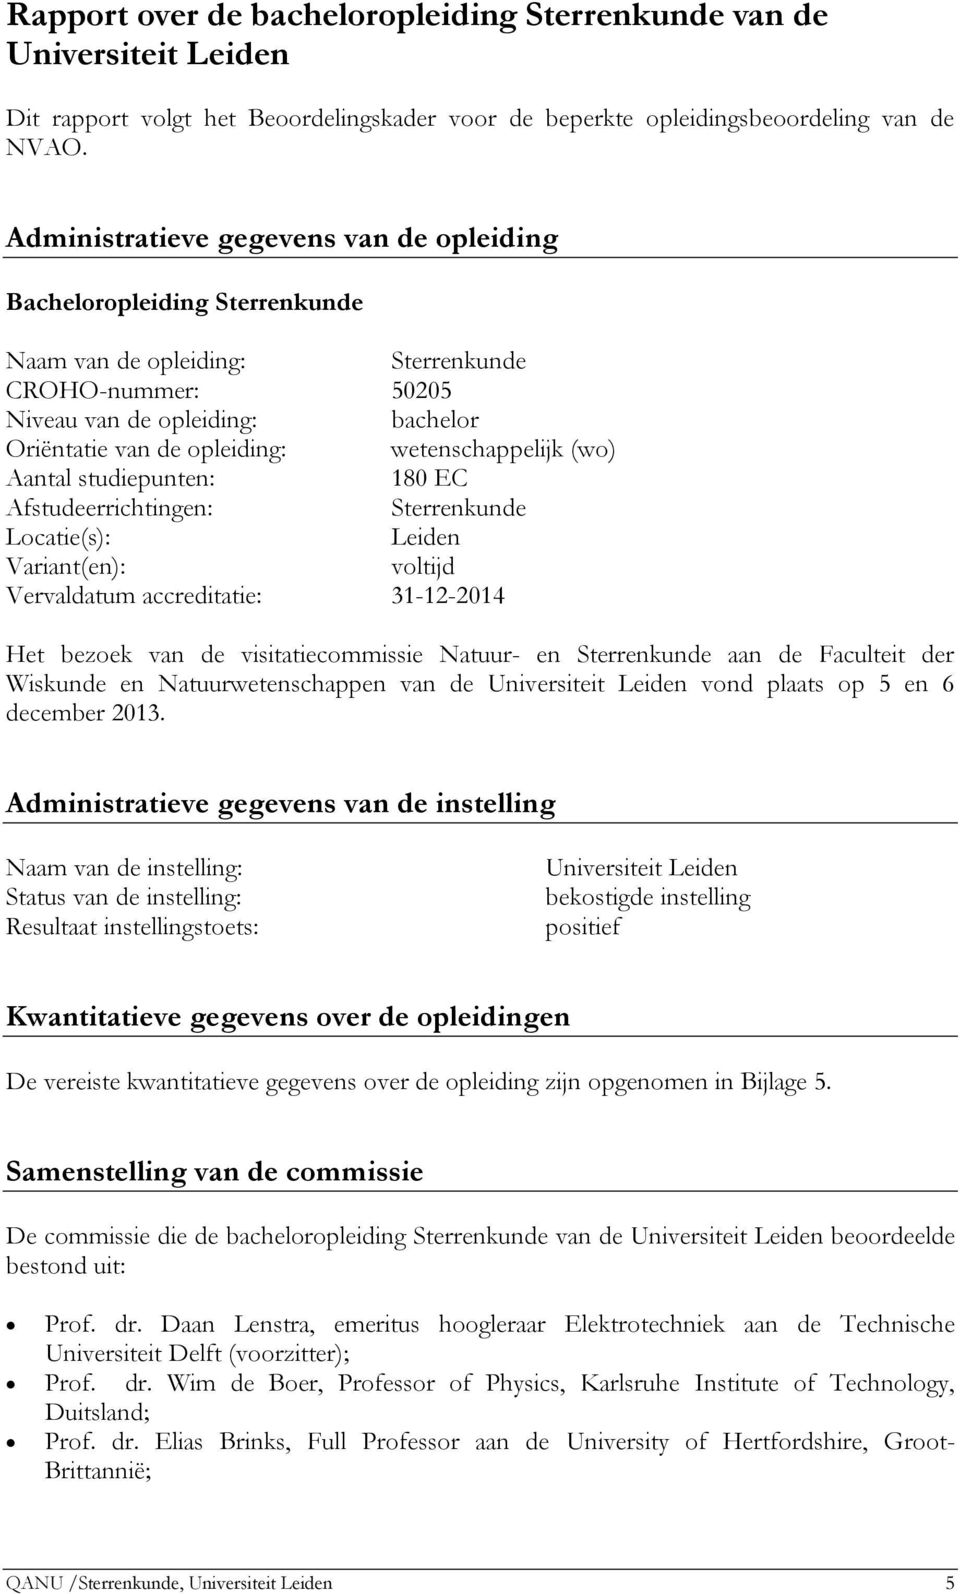 wetenschappelijk (wo) Aantal studiepunten: 180 EC Afstudeerrichtingen: Sterrenkunde Locatie(s): Leiden Variant(en): voltijd Vervaldatum accreditatie: 31-12-2014 Het bezoek van de visitatiecommissie